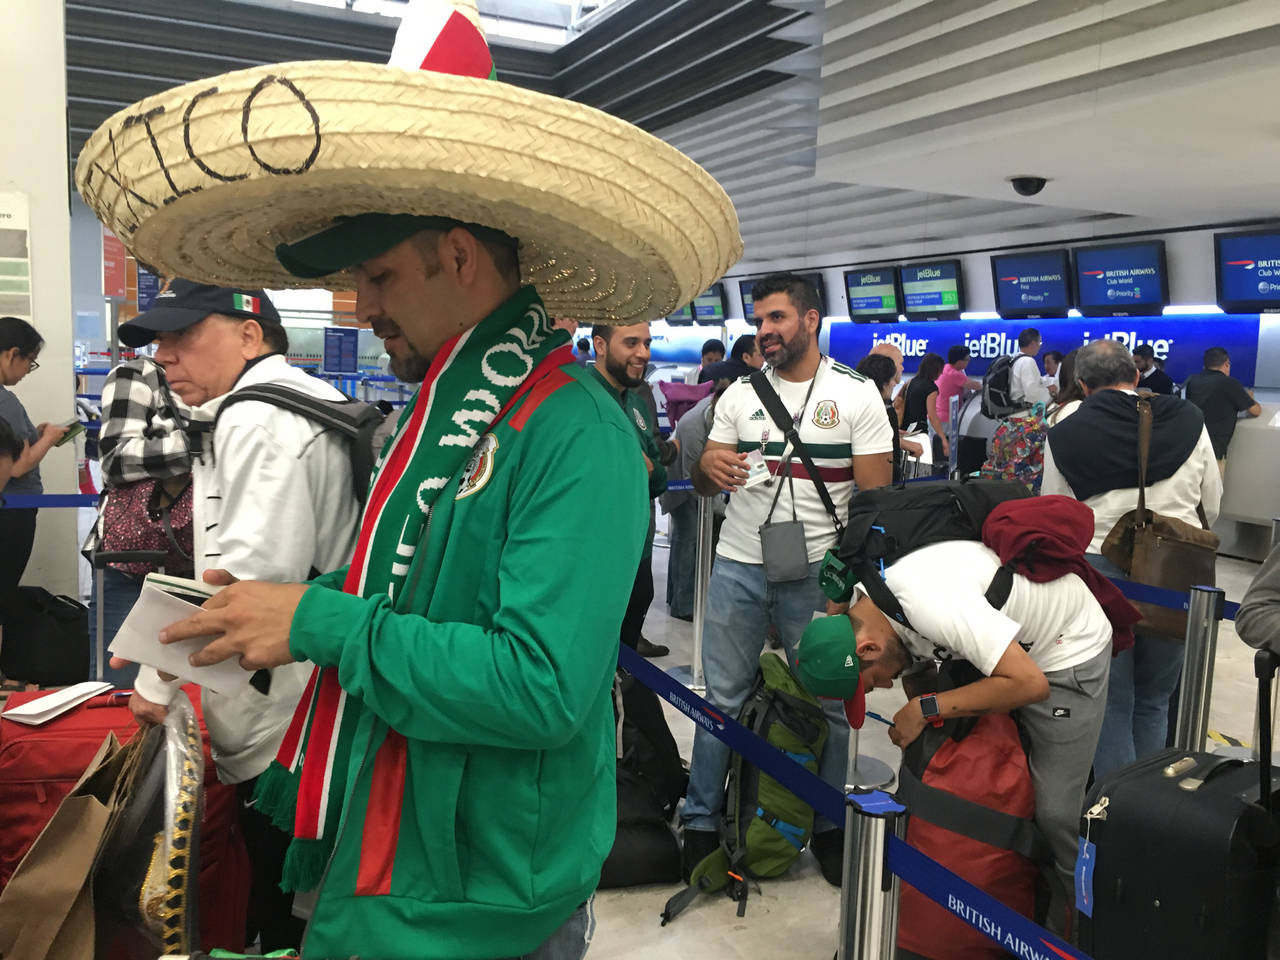 Muchos mexicanos ya comenzaron a hacer el viaje hacia el Mundial. Profeco atiende a los aficionados viajeros